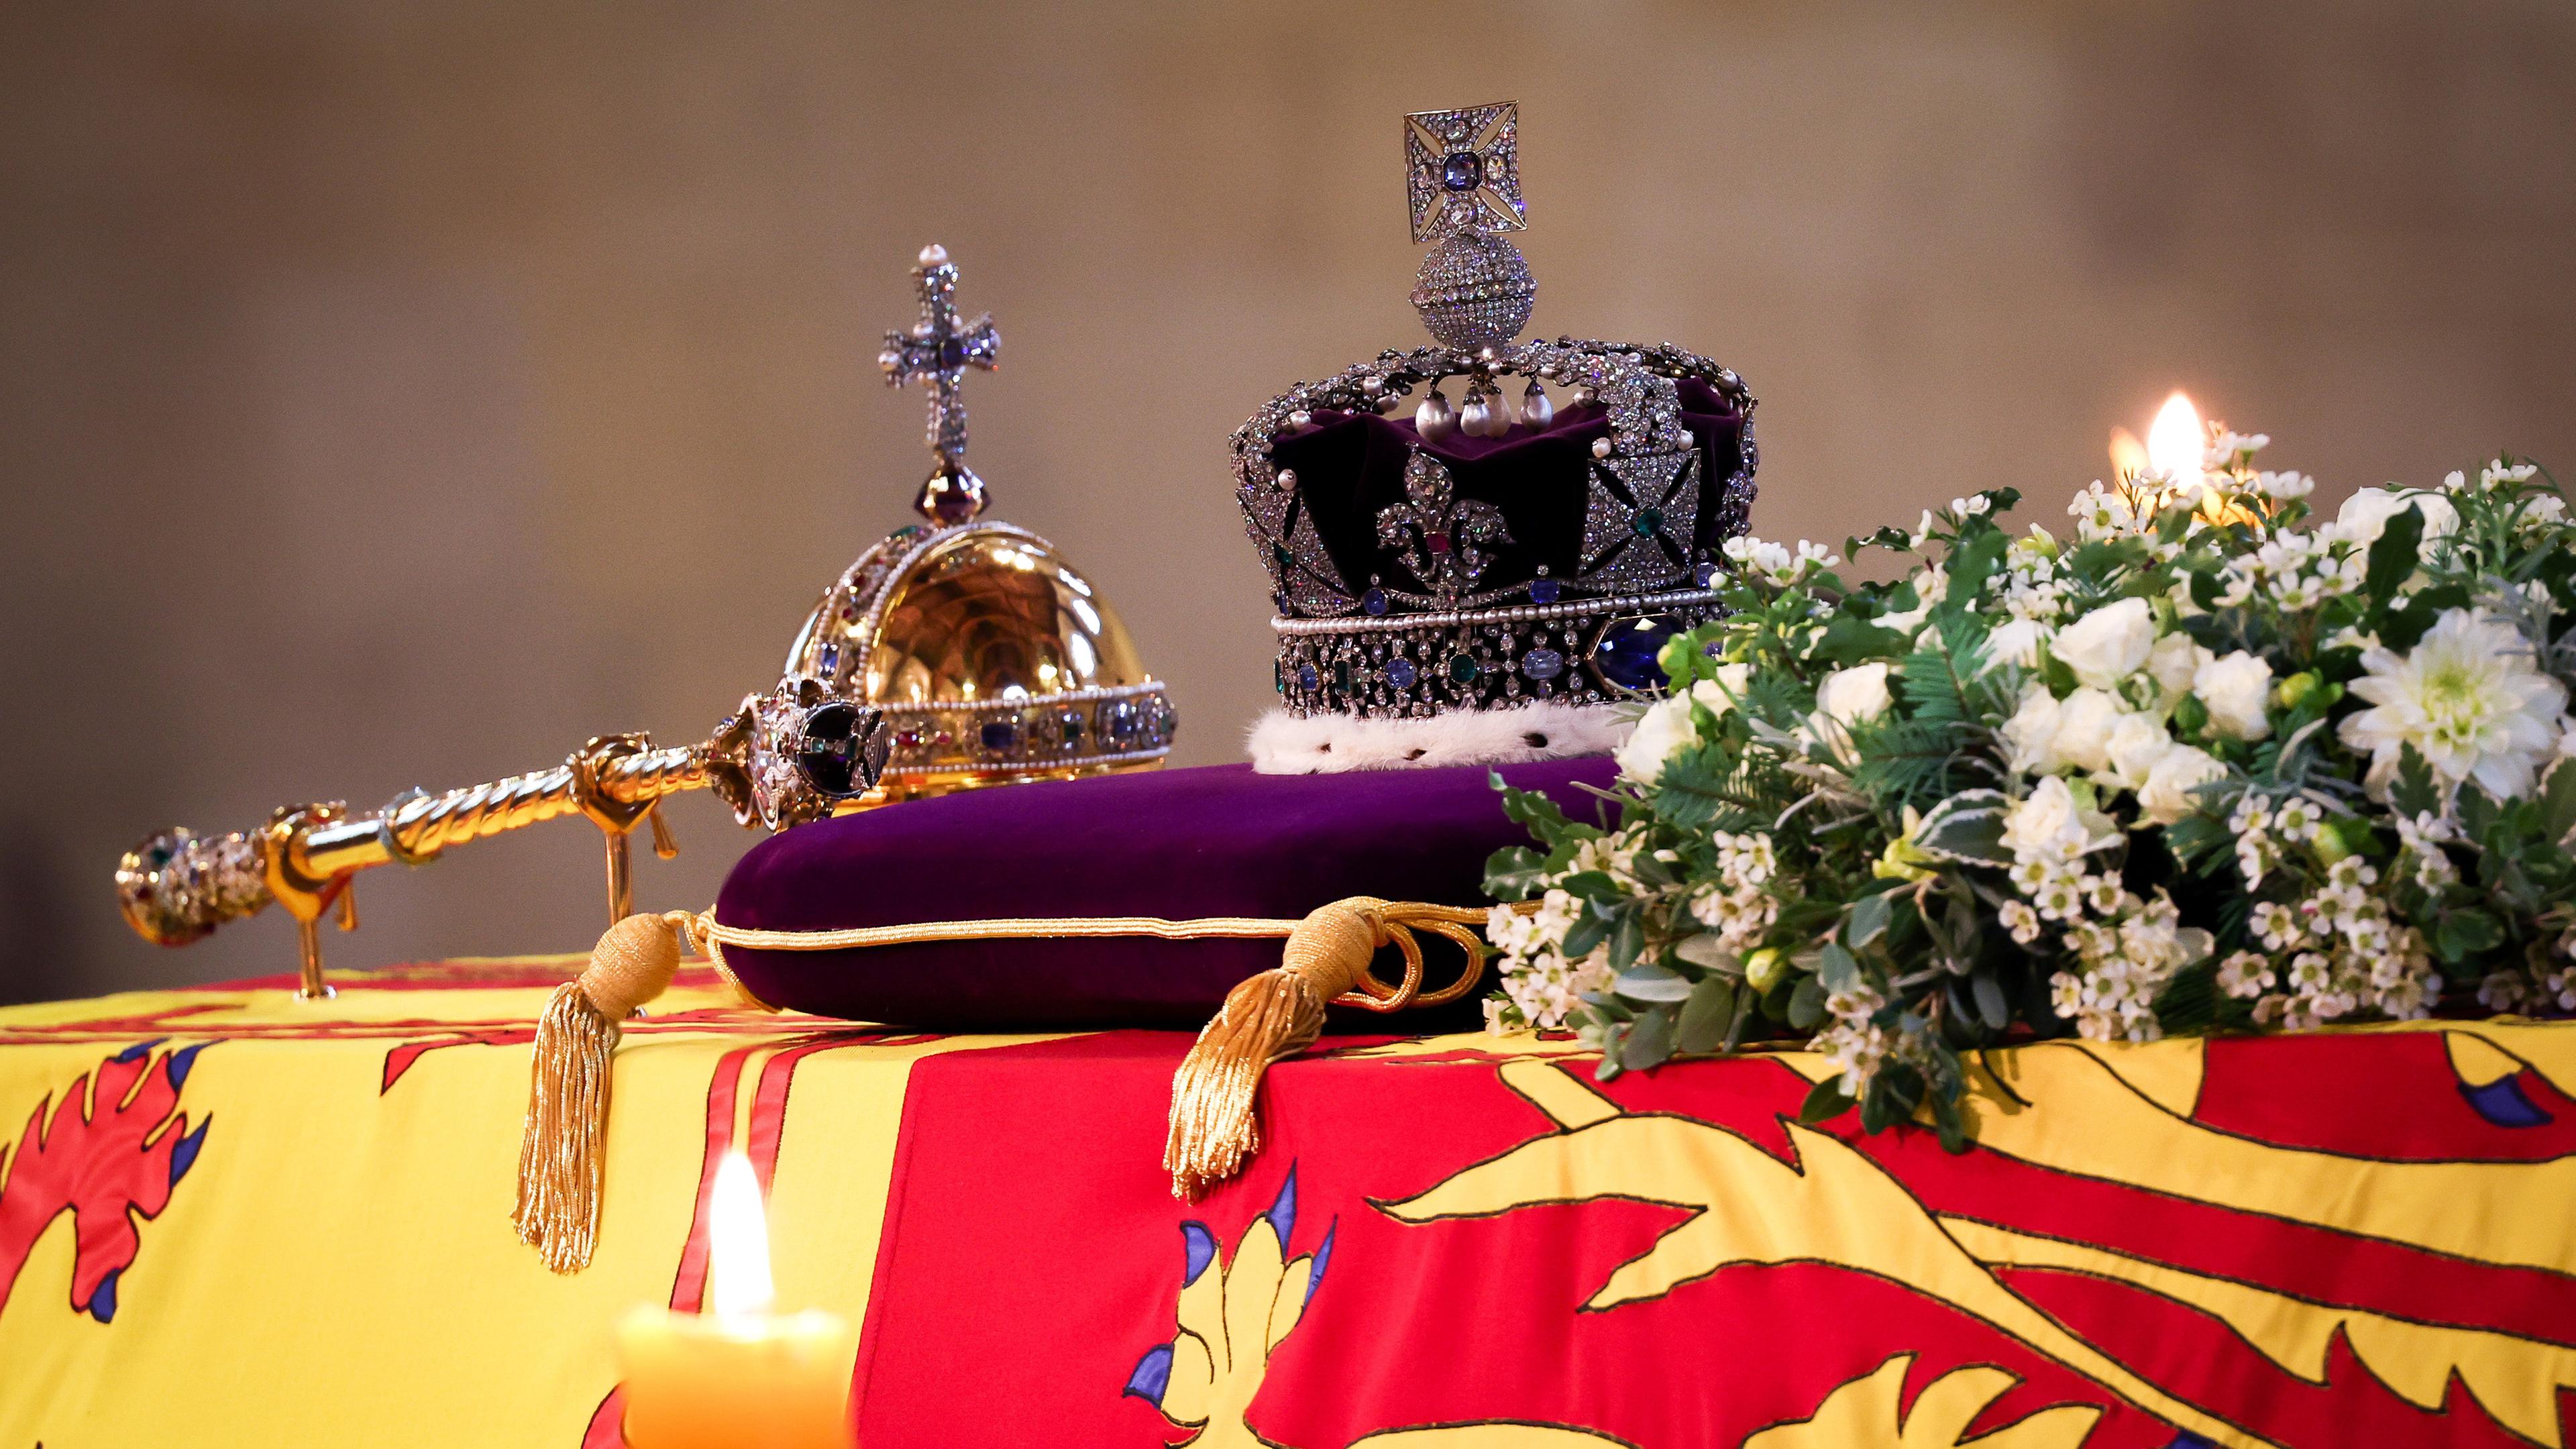  Großbritannien, London: Der Sarg von Königin Elizabeth II., der in die königliche Standarte gehüllt ist und auf dem die Imperial State Crown thront, ist in der Westminster Hall aufgebahrt.